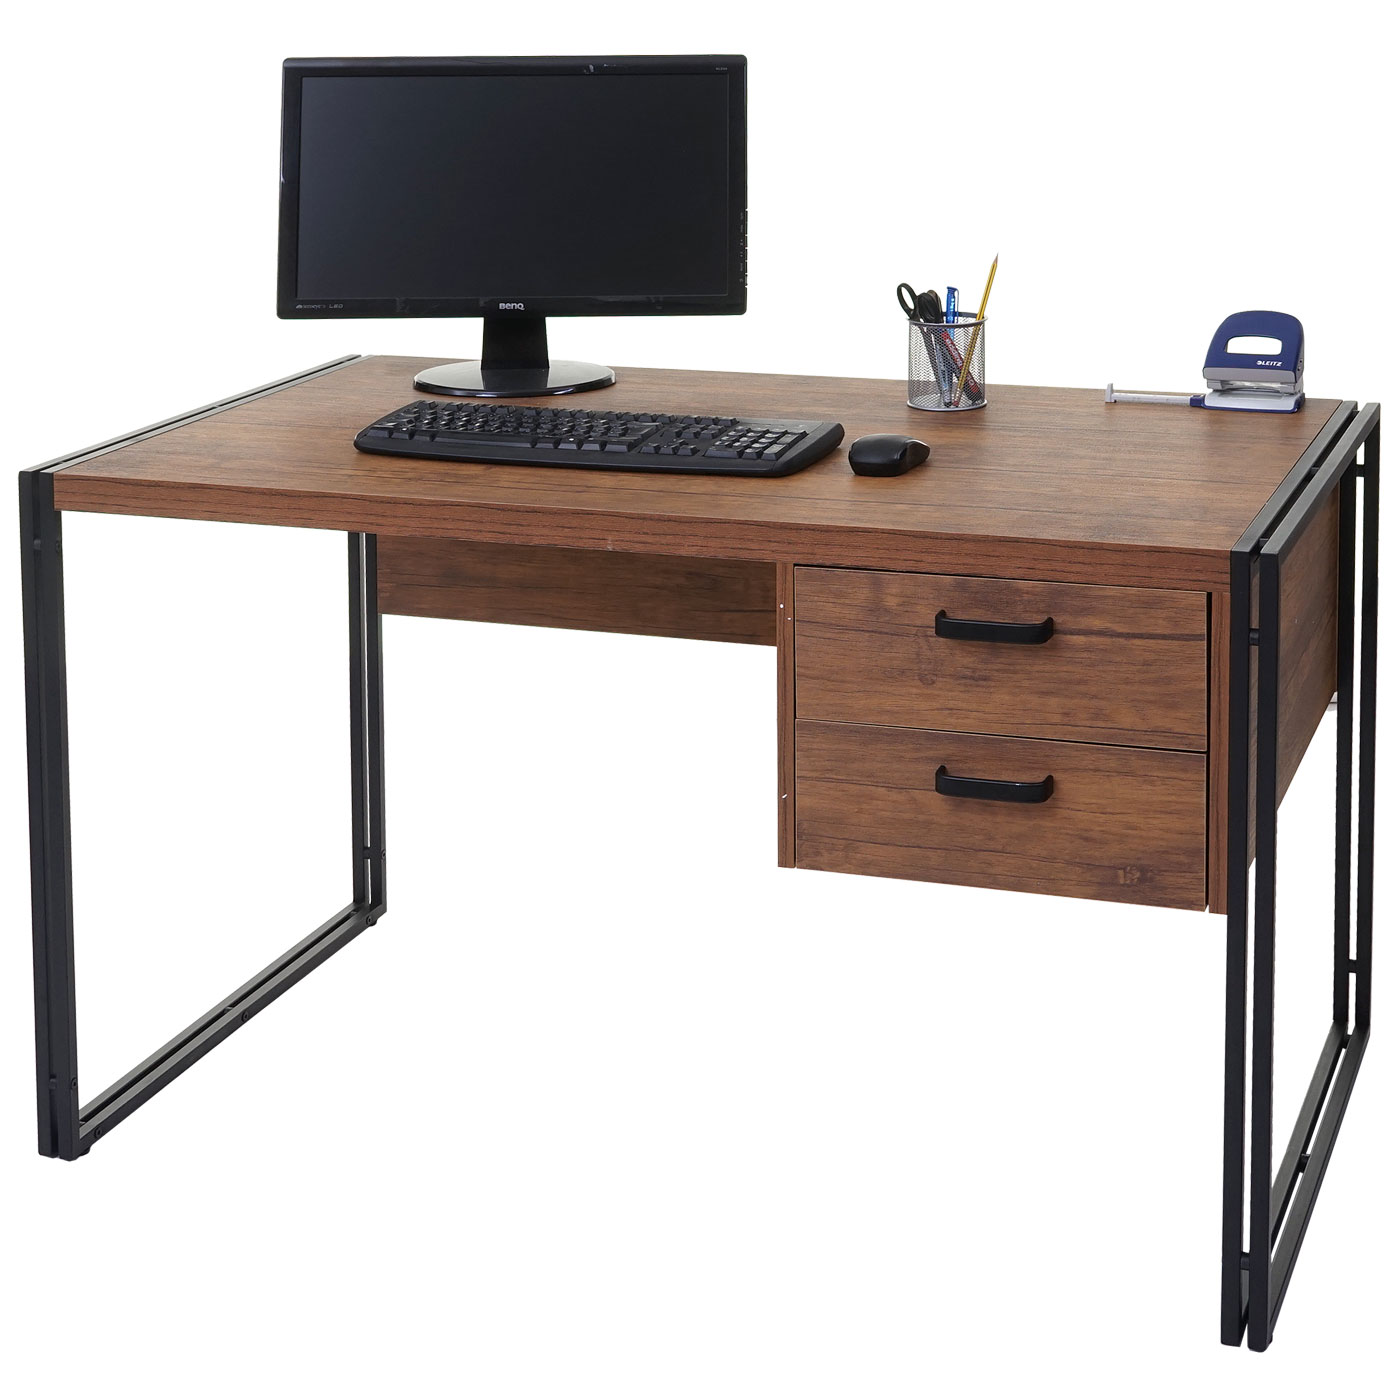 Купить стол готовый. Стол 120 Activa Metal. Компьютерный стол. Письменный столик. Стол компьютерный офисный.